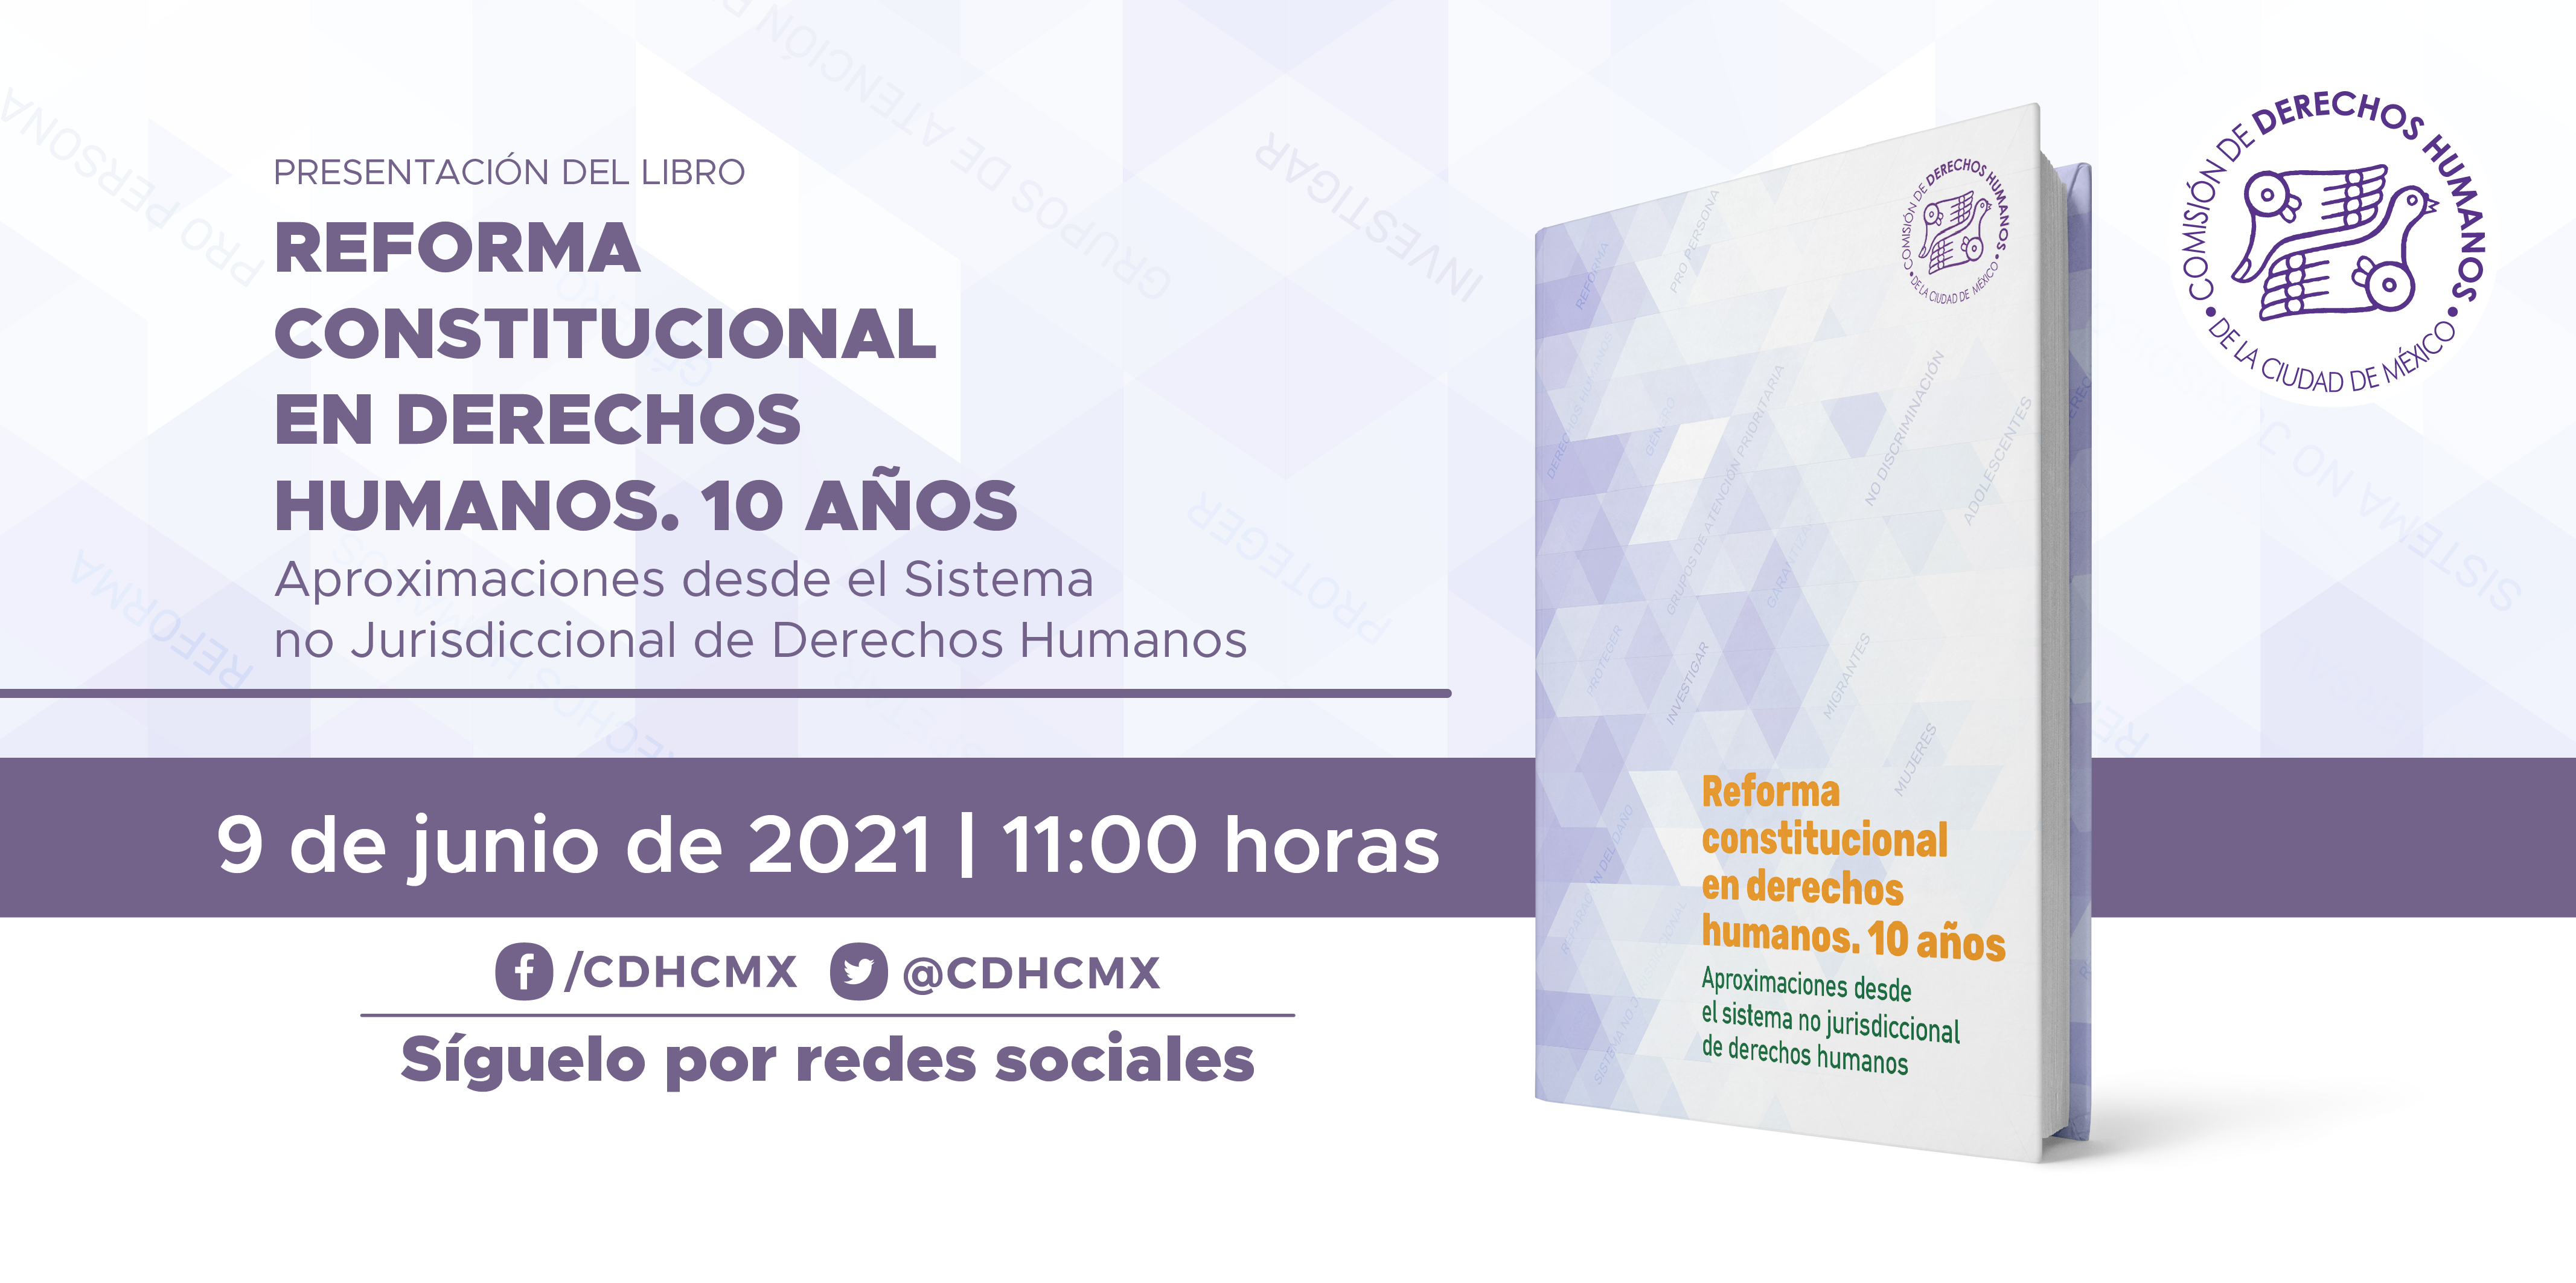 Presentación del libro "Reforma Constitucional en Derechos Humanos. 10 años. Aproximaciones desde el Sistema no Jurisdiccional de Derechos Humanos"